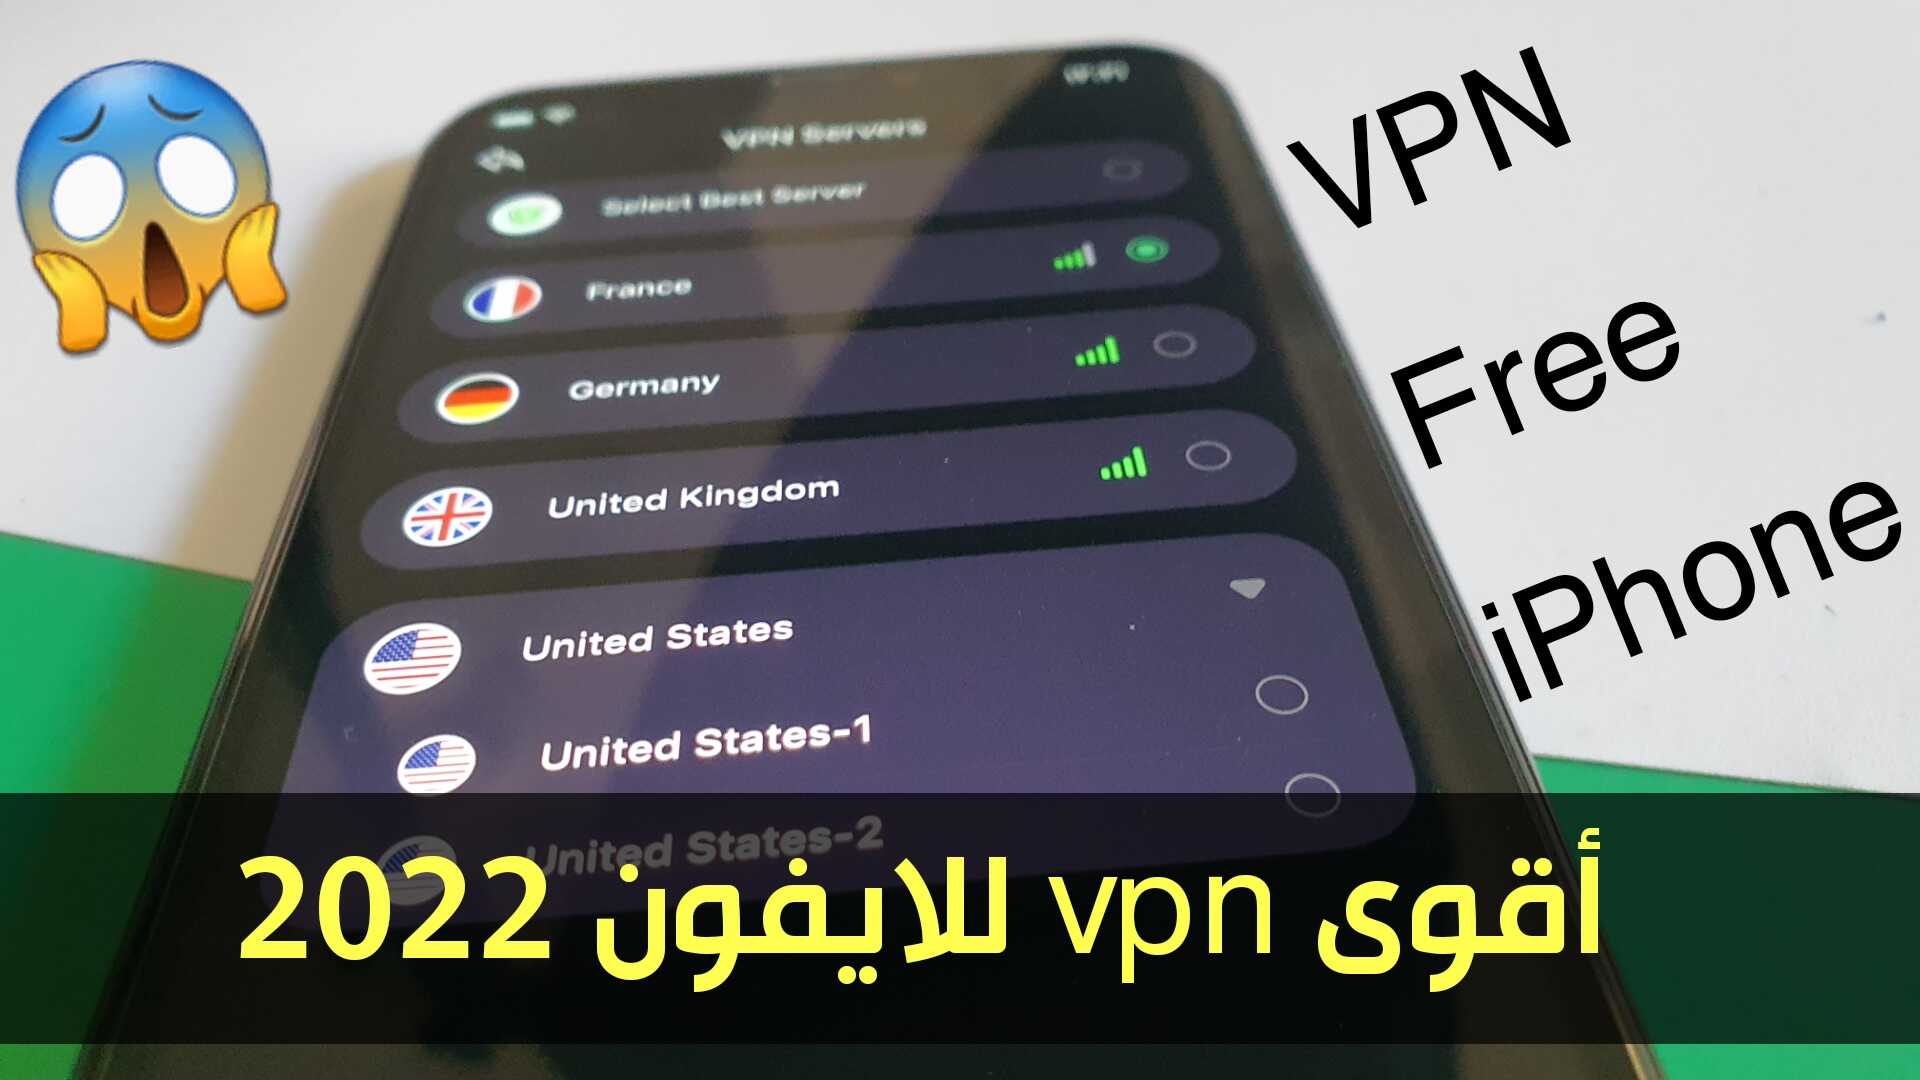 أقوى vpn للايفون 2022 لرفع الحظر عن المواقع والتطبيقات المحجوبة